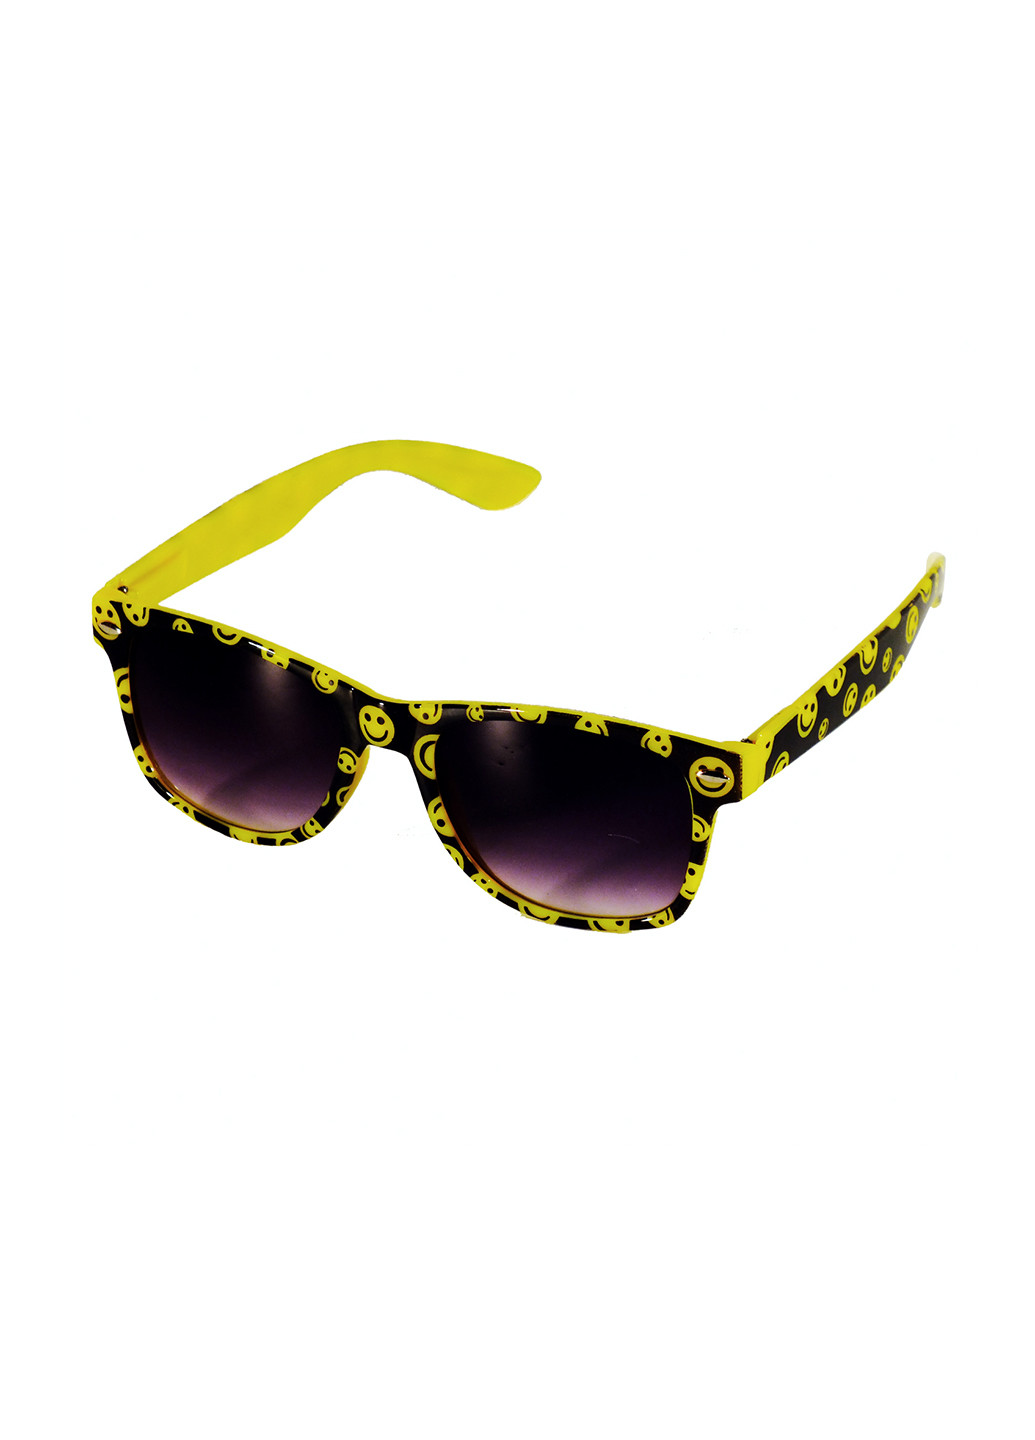 Солнцезащитные очки Seta Decor рисунки жёлтые